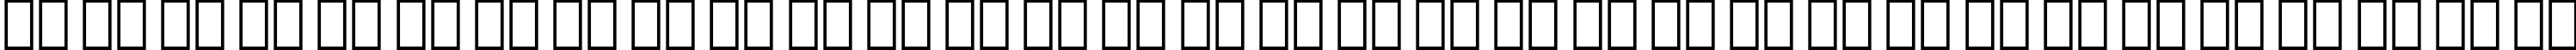 Пример написания русского алфавита шрифтом Swiss 924 BT